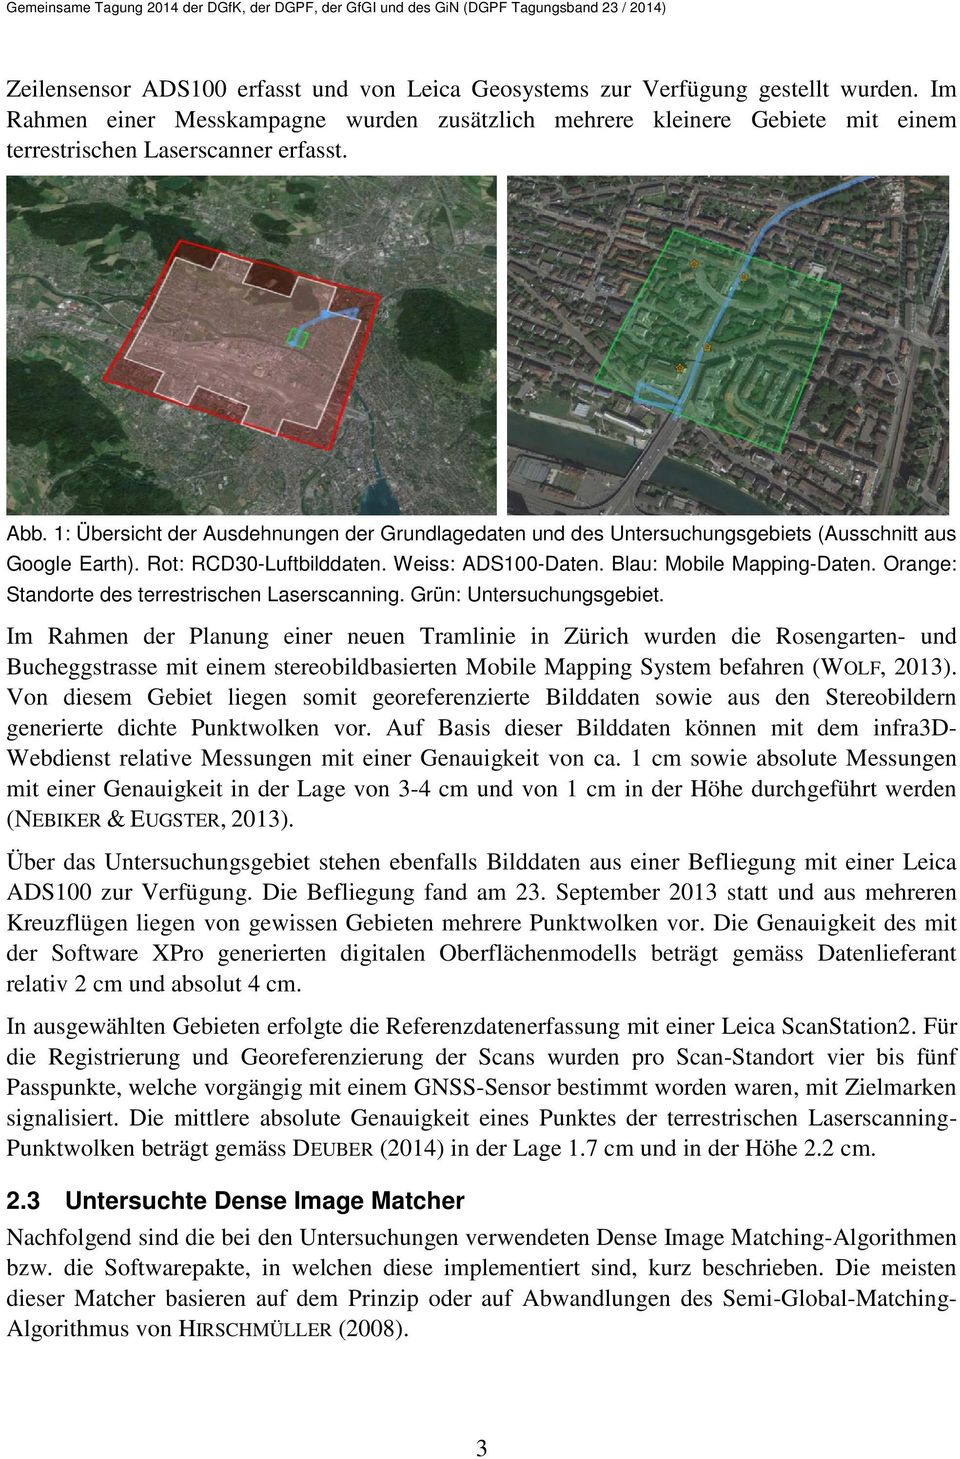 1: Übersicht der Ausdehnungen der Grundlagedaten und des Untersuchungsgebiets (Ausschnitt aus Google Earth). Rot: RCD30-Luftbilddaten. Weiss: ADS100-Daten. Blau: Mobile Mapping-Daten.